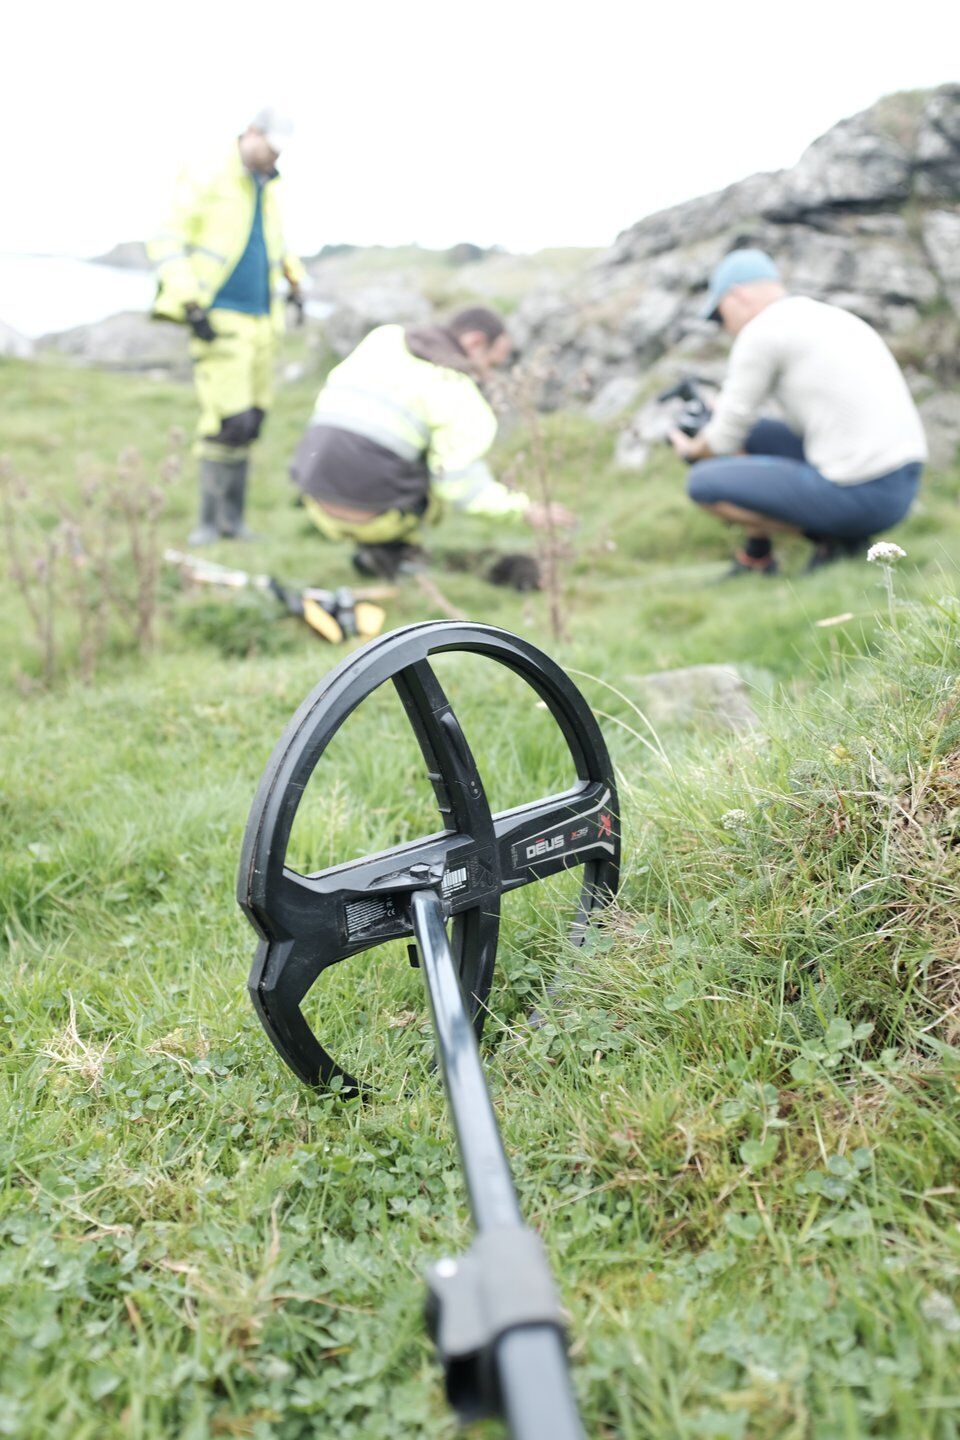 Металошукач у Норвегії випадково знайшов дивовижний золотий скарб (фото)